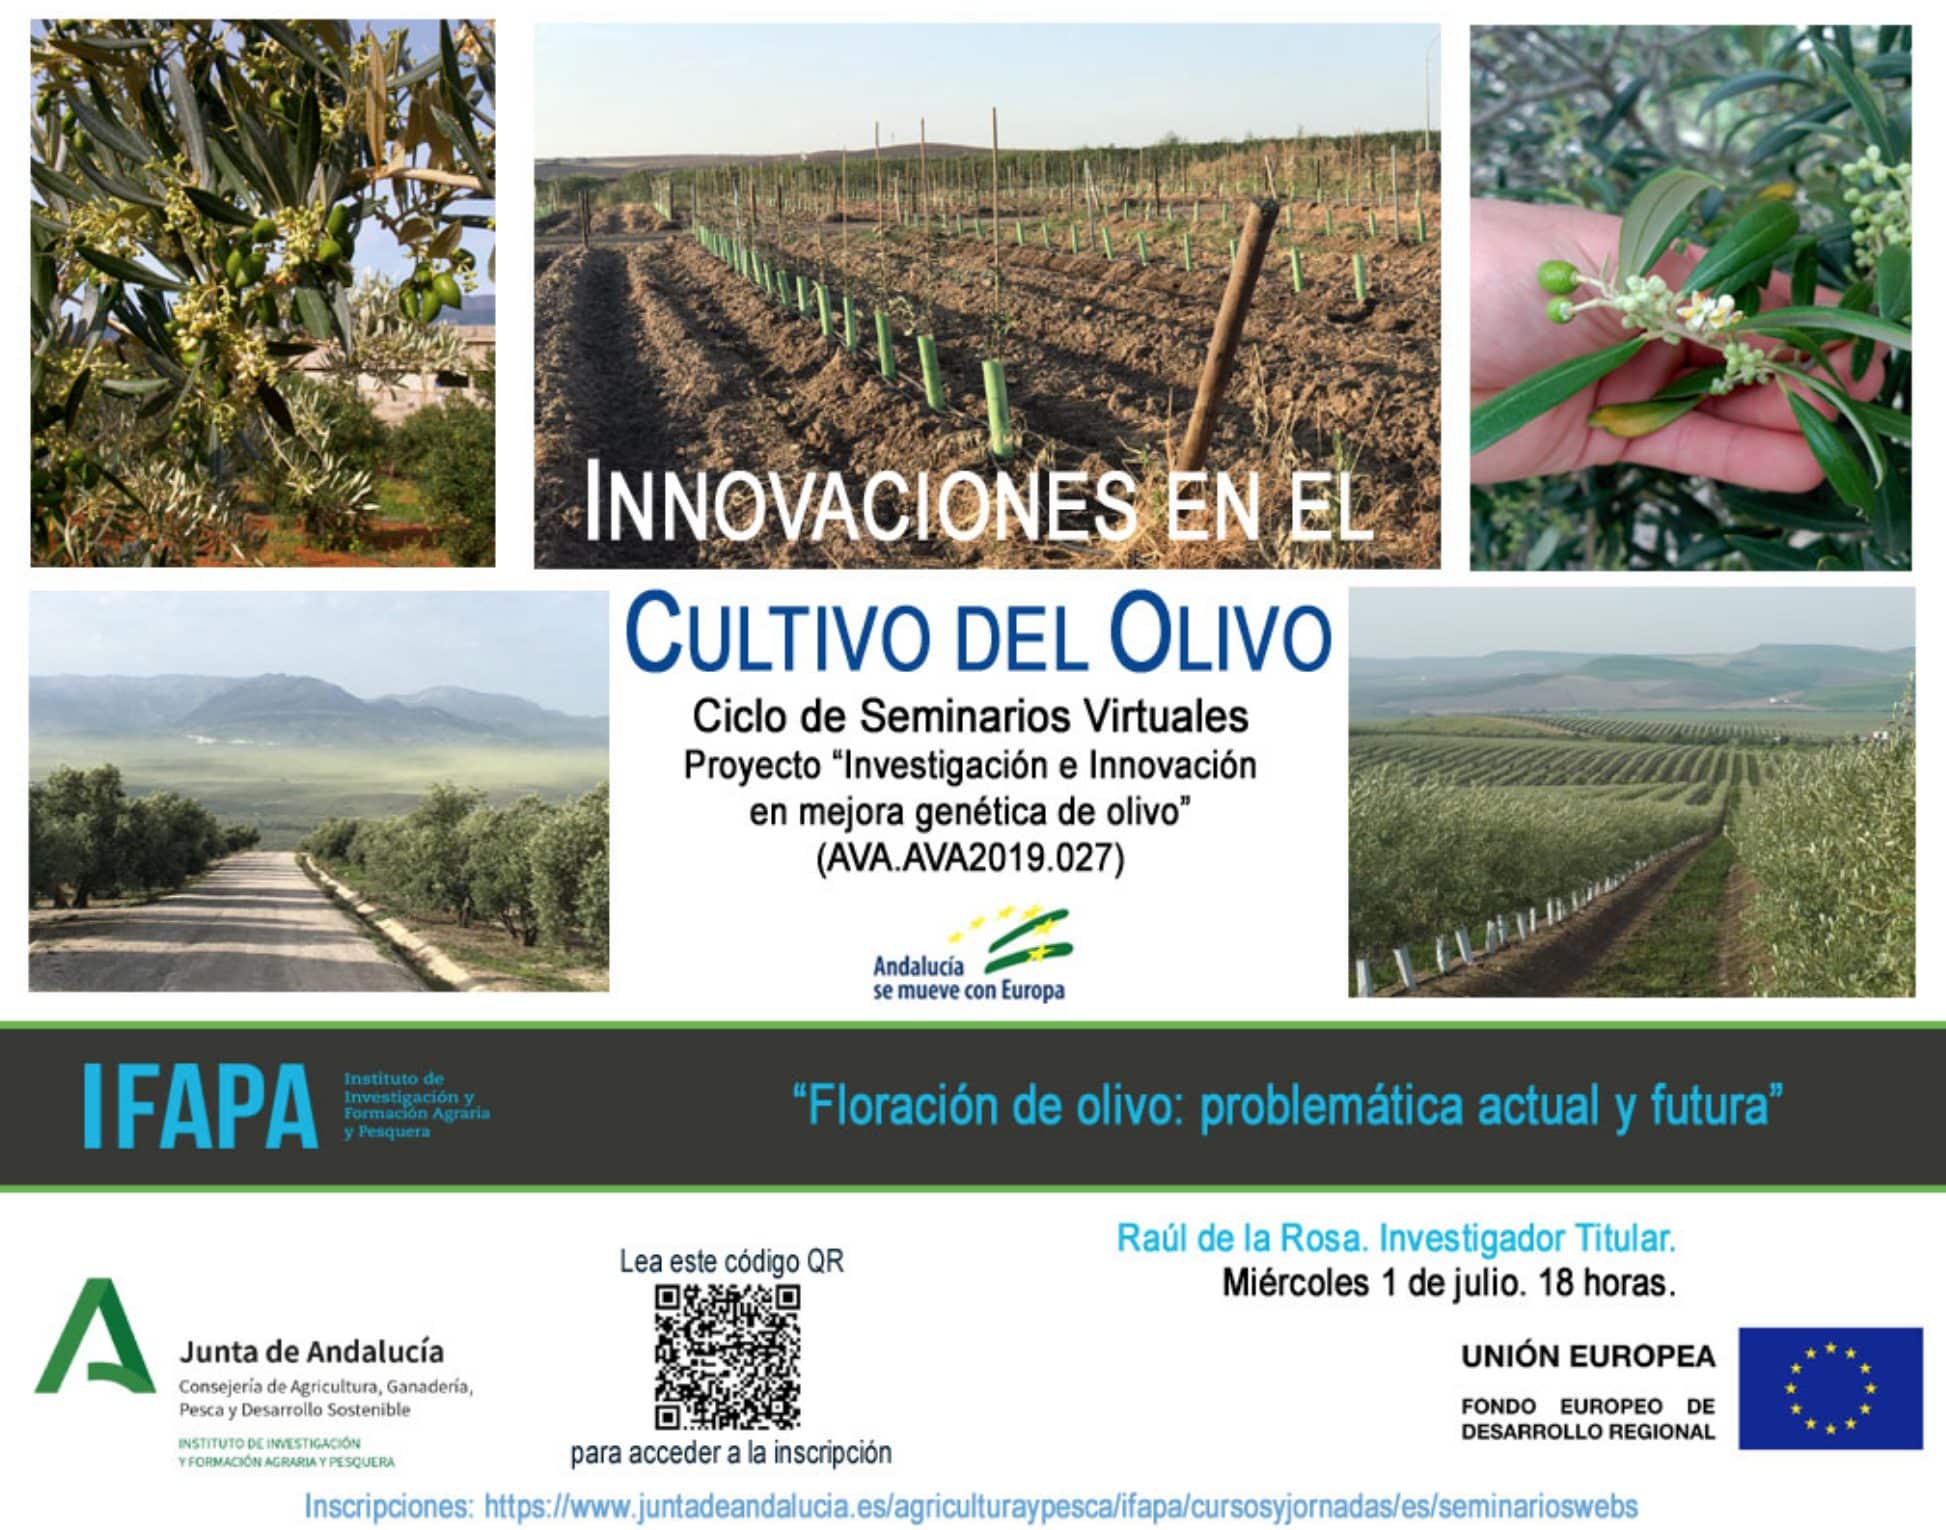 Seminarios Virtuales IFAPA: Innovaciones en el Cultivo del Olivo. Segunda jornada dedicada al proyecto “Investigación e innovación en mejora genética de olivo